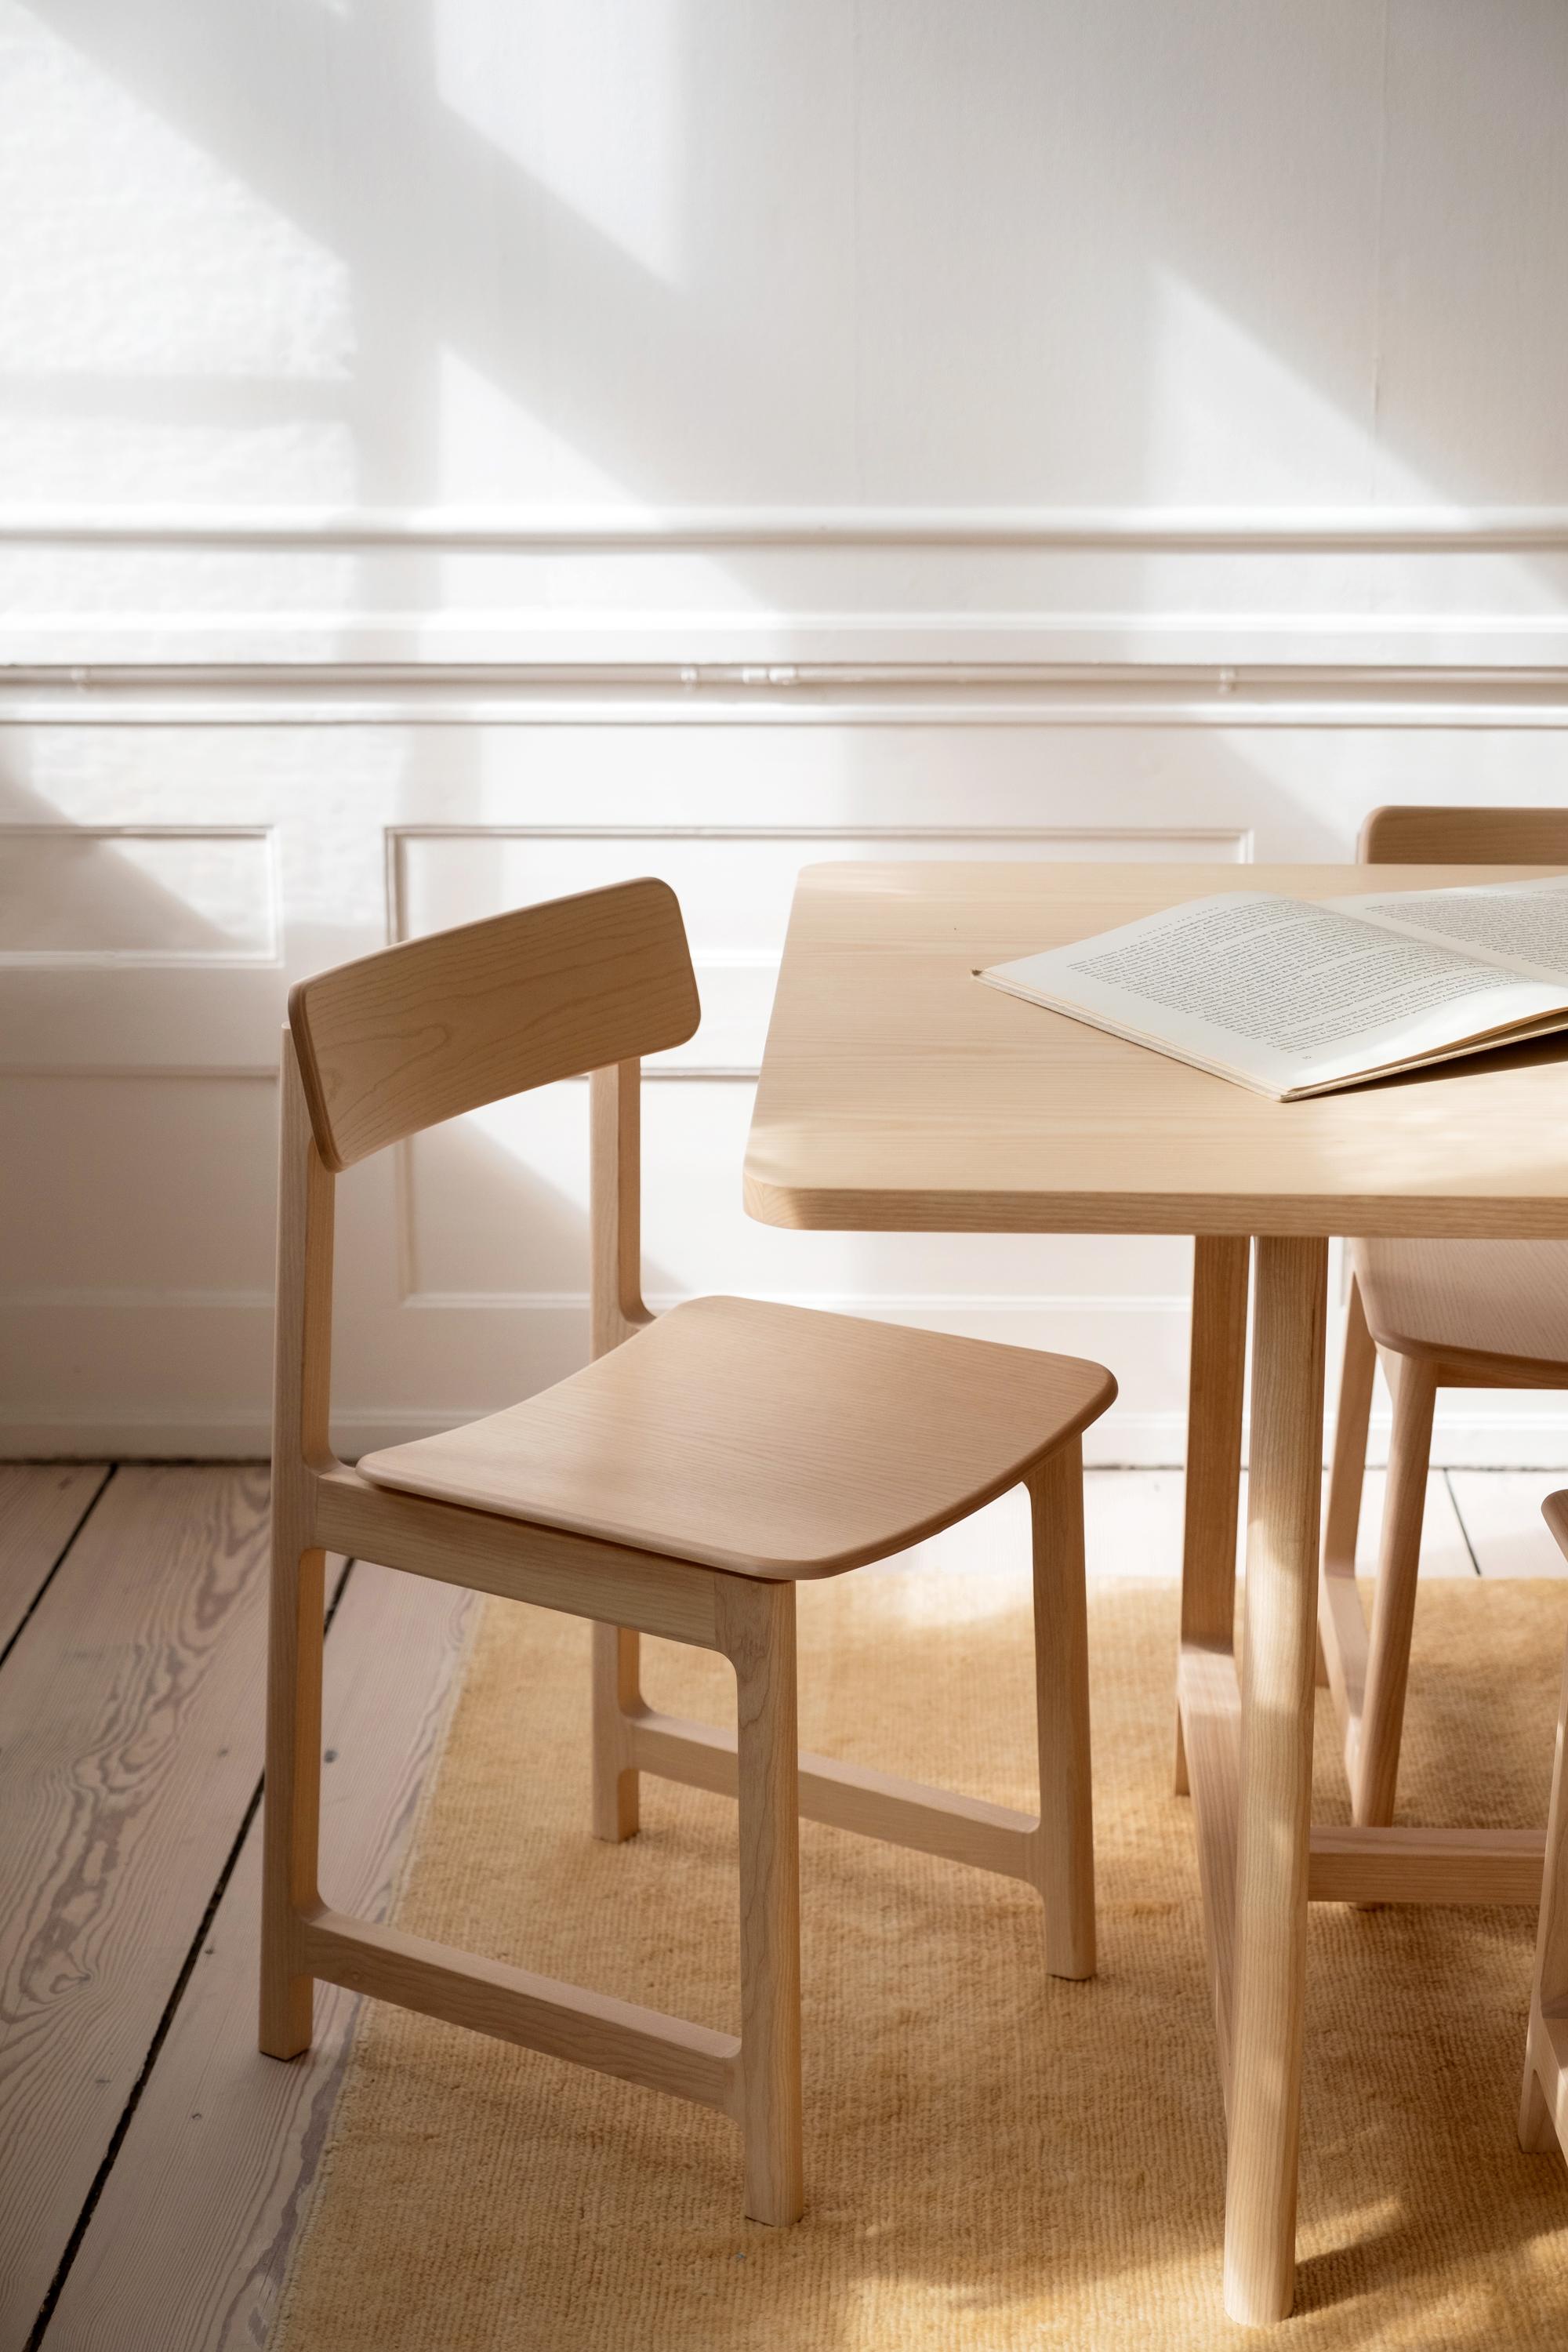 Die FRAME Collection ist das perfekte Trio für jeden Raum, in dem man sich trifft. Die Kollektion besteht aus einem Tisch, einem Stuhl und einer Bank und enthält alles, was man für ein gemütliches Beisammensein braucht.

Das schlichte, skulpturale